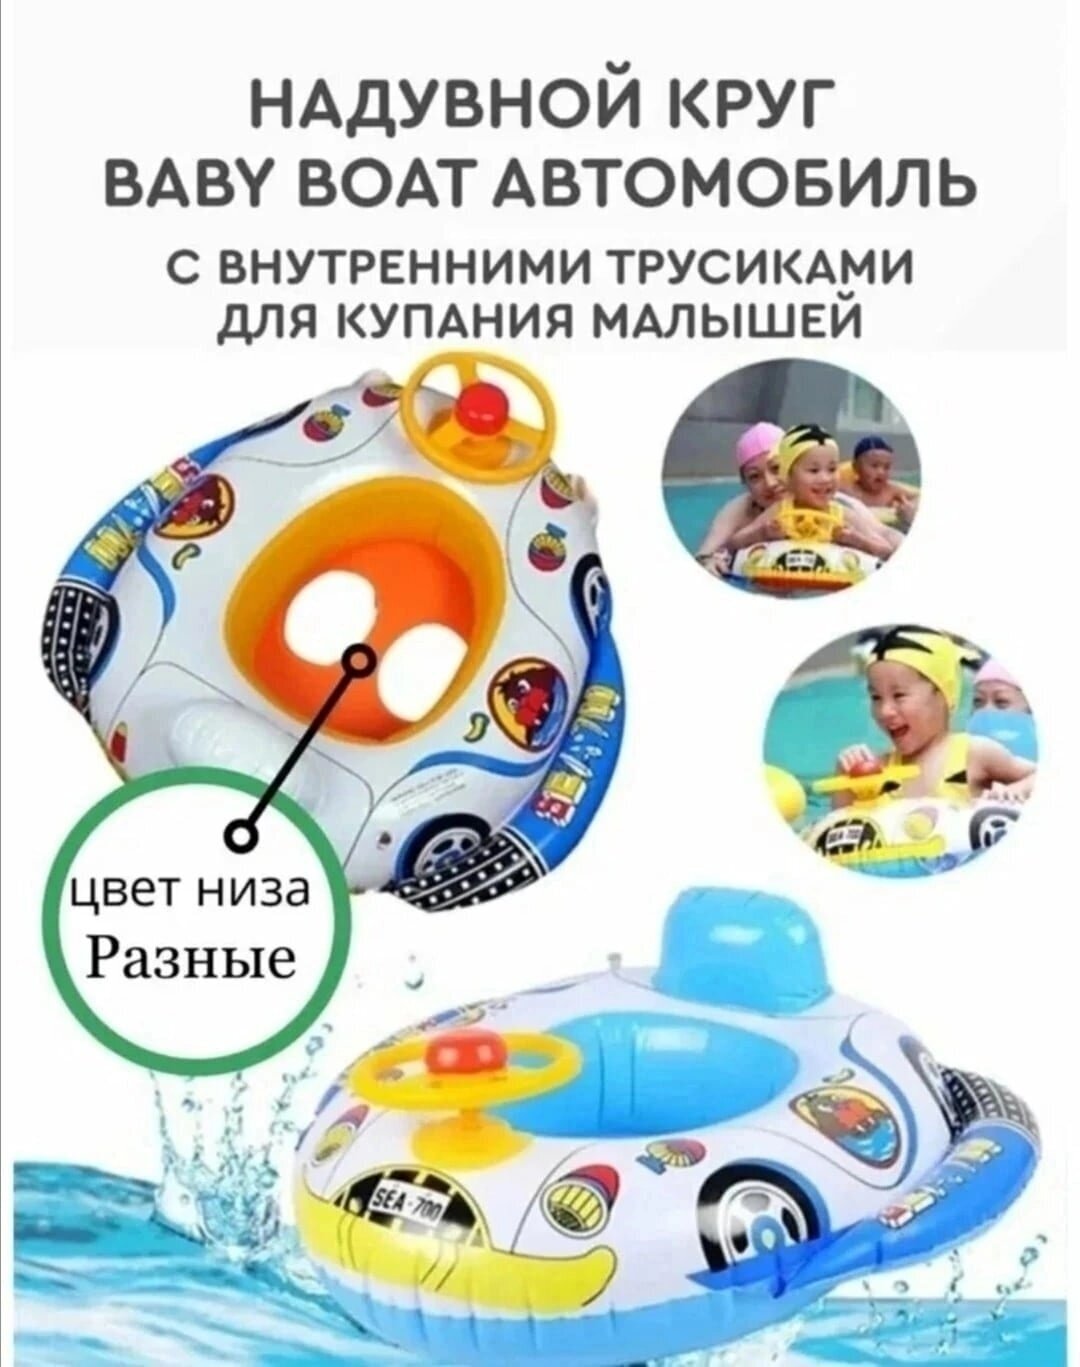 Детский надувной круг "Машинка" с отверстием для ног, круг-ходунки для плавания, детский круг для плавания, надувной круг с трусиками